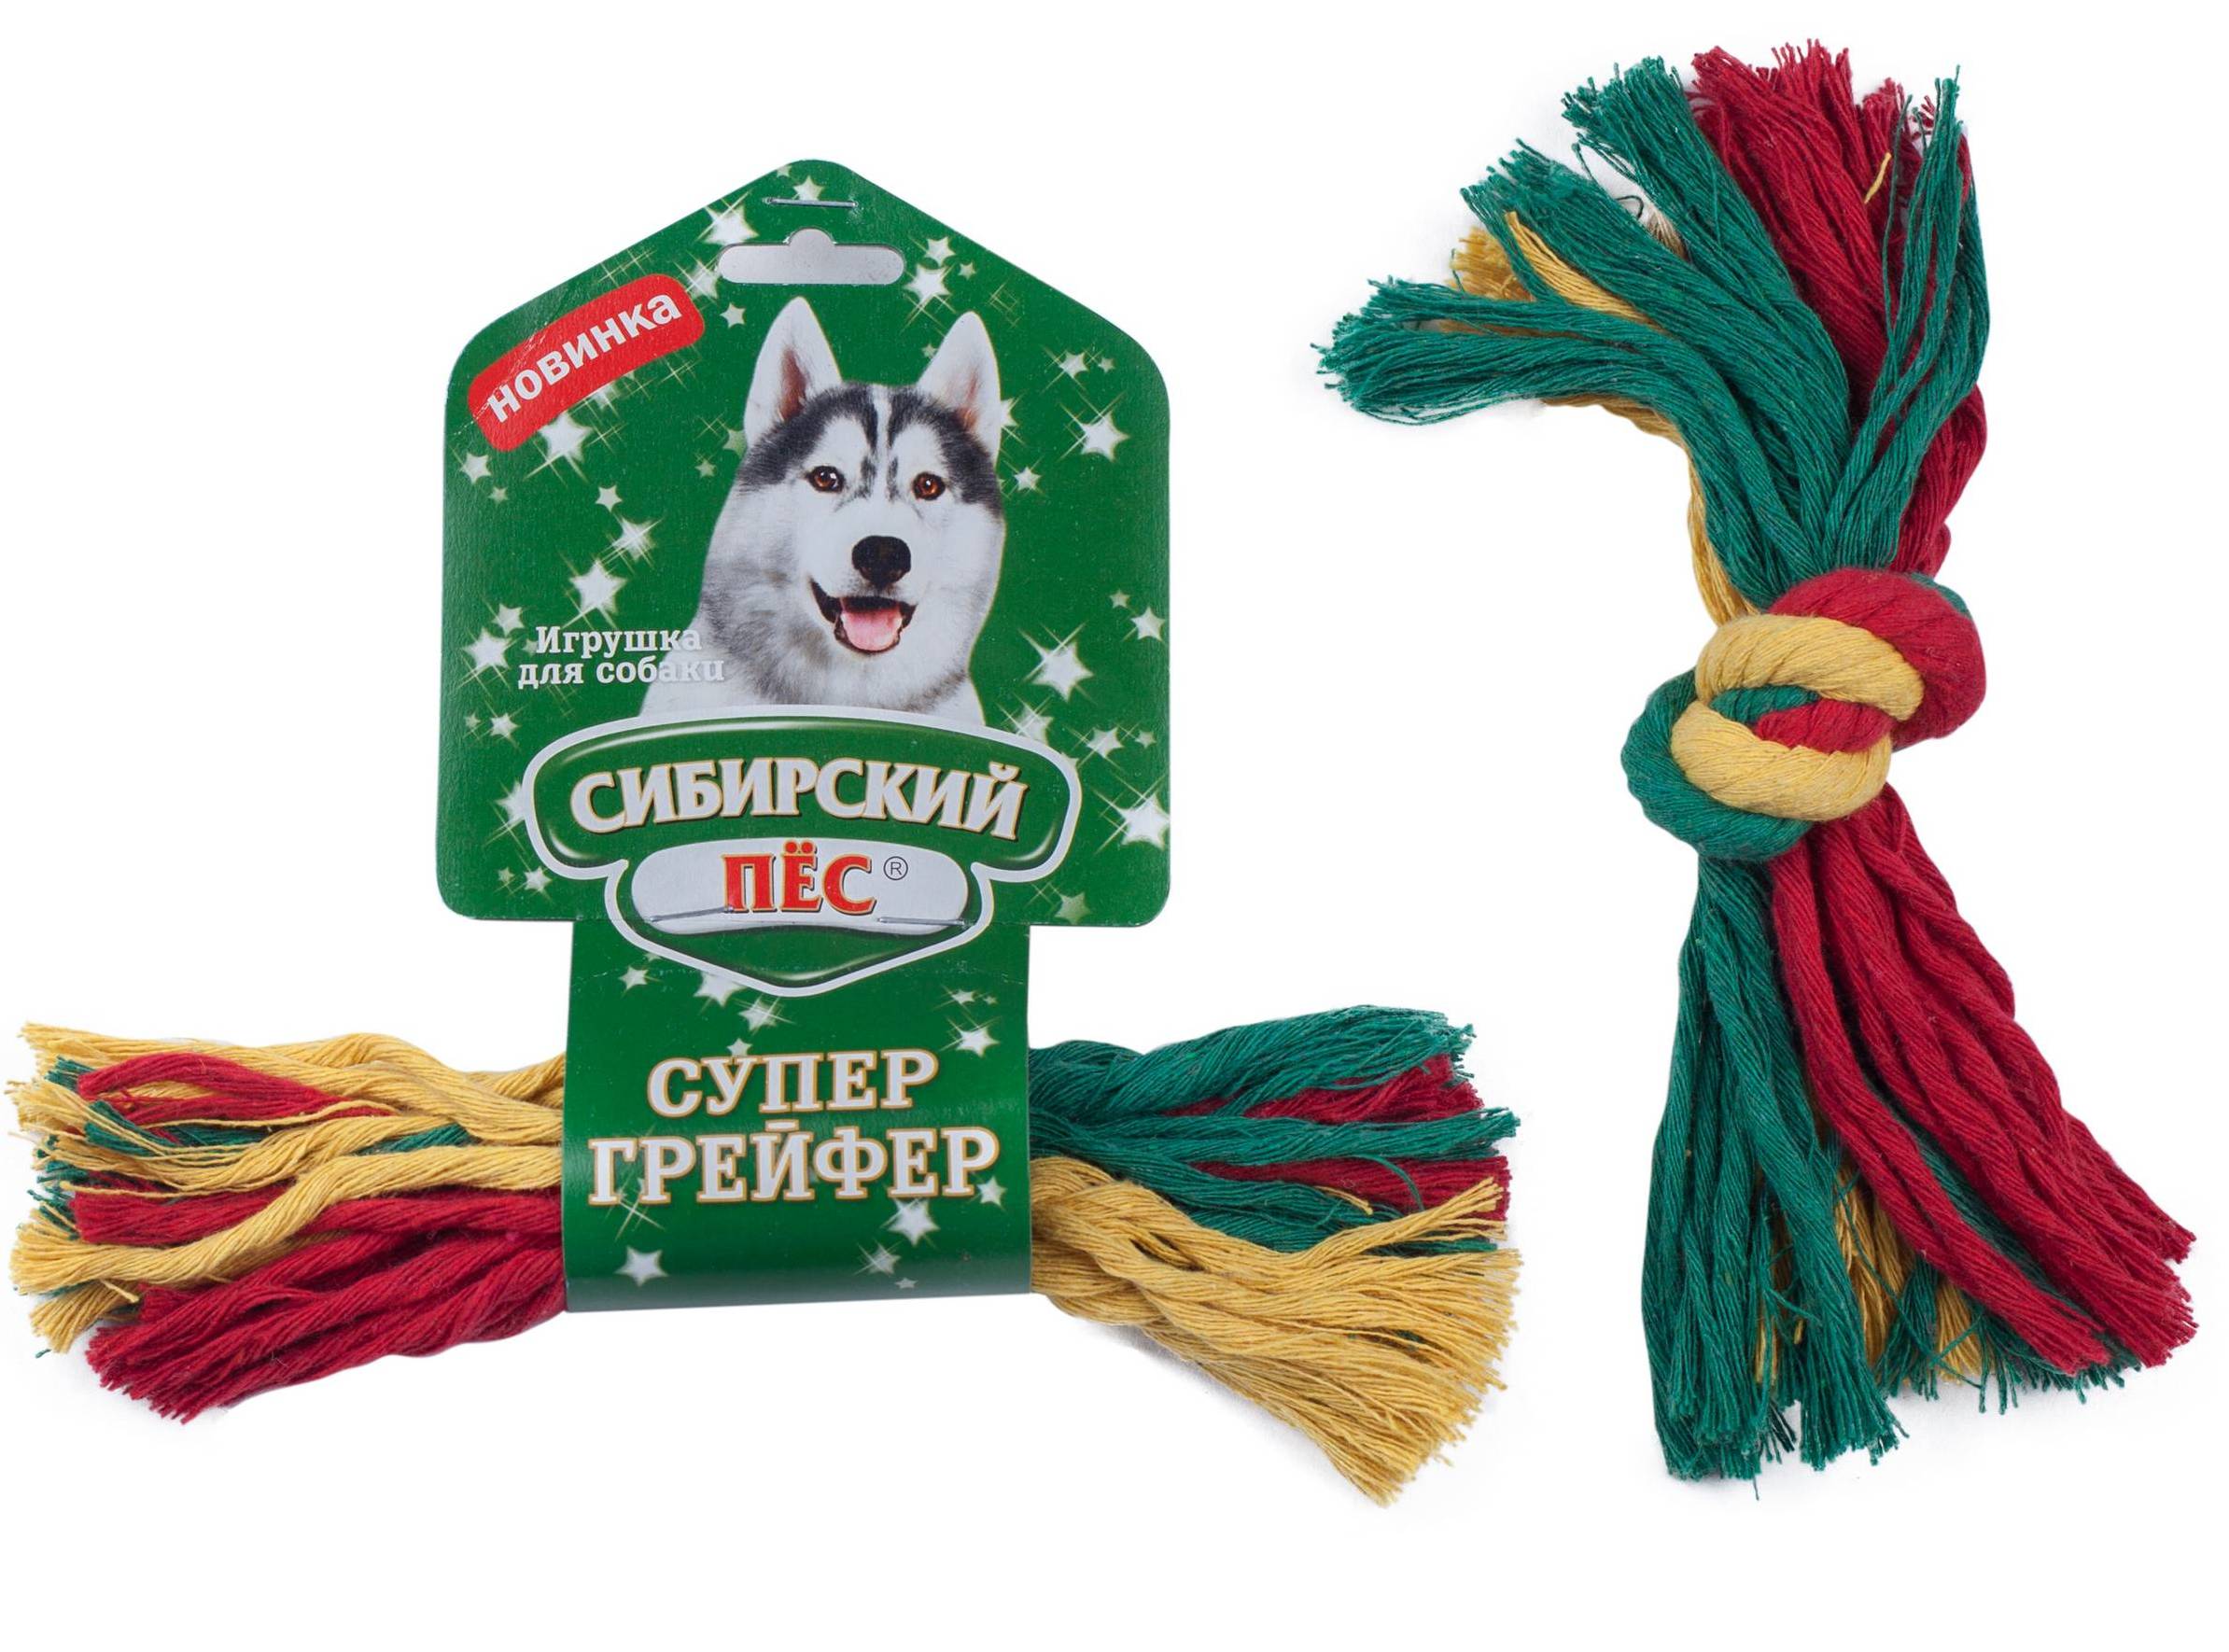 фото Грейфер (игрушка для перетягивания) для собак сибирский пес 1 узел, 32 см